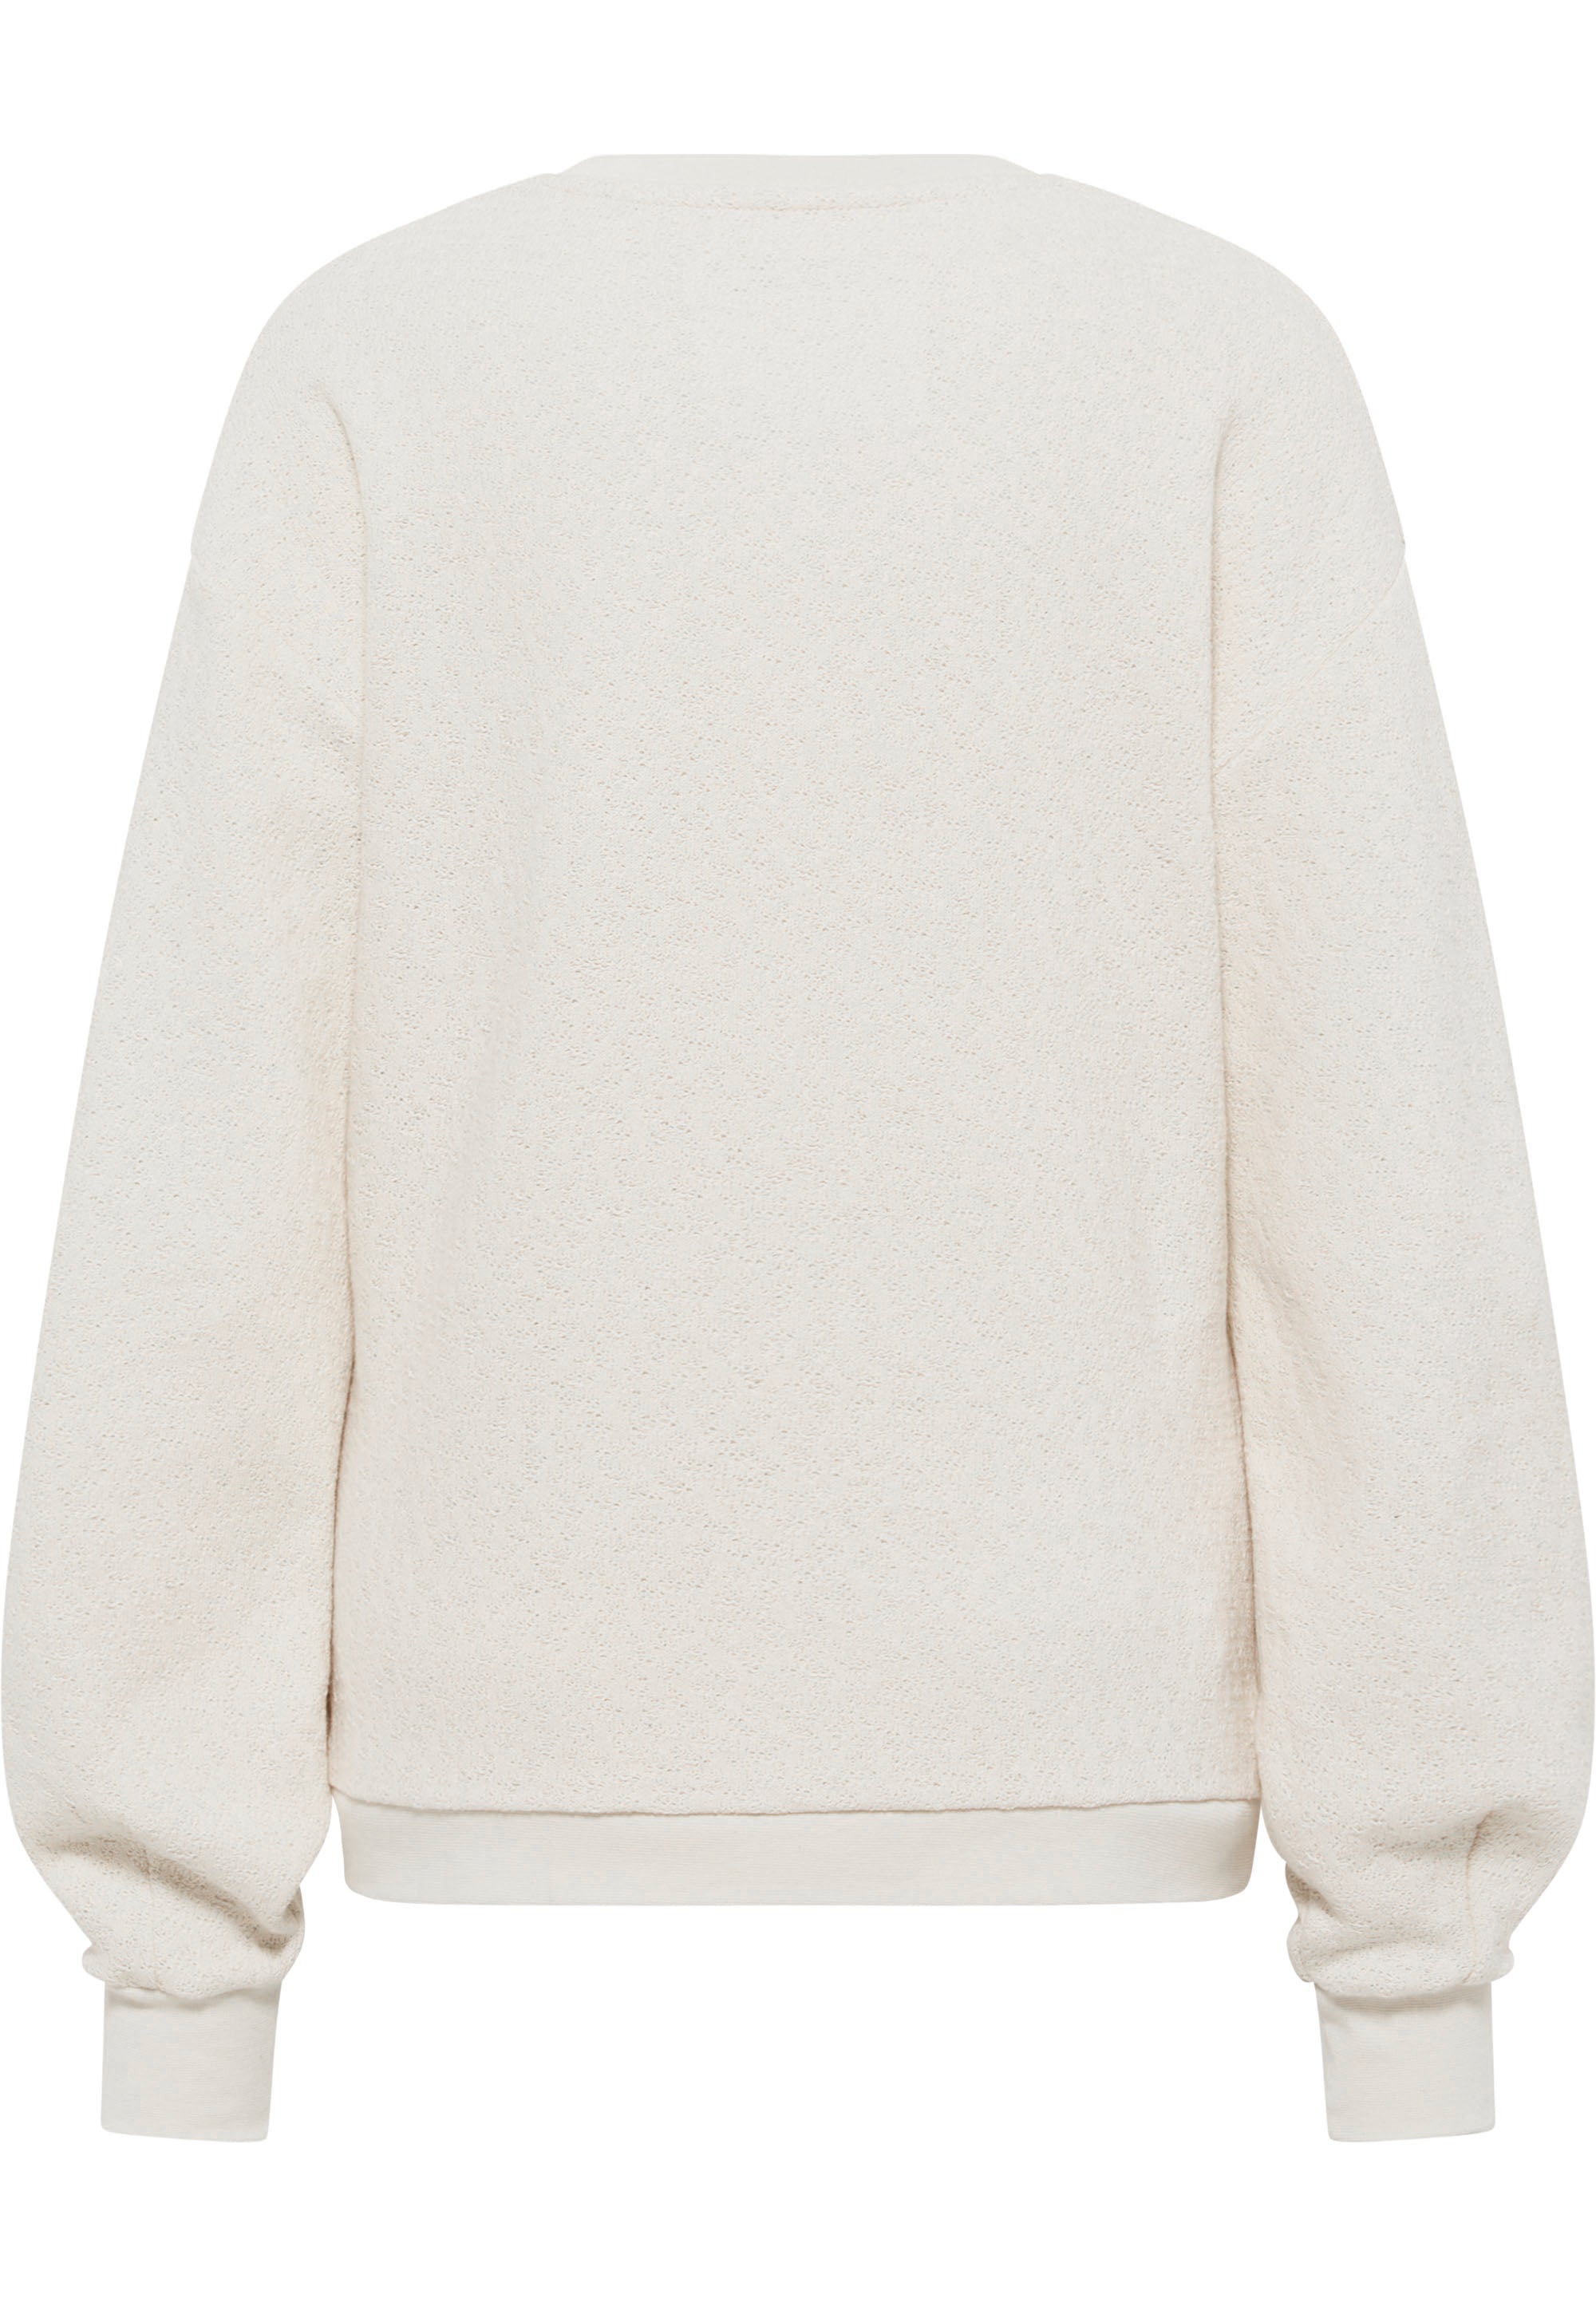 SOMWR CHANNEL Sweater UND001